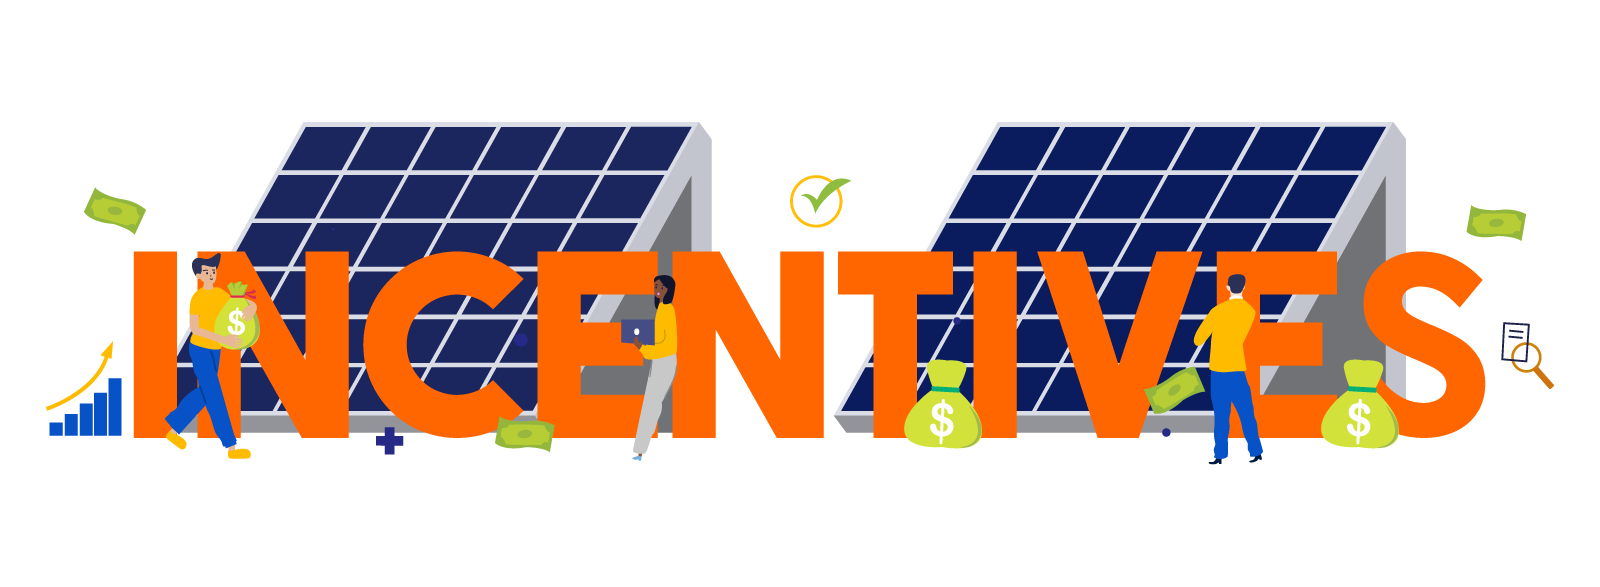 Solar Incentives Wa Reviews